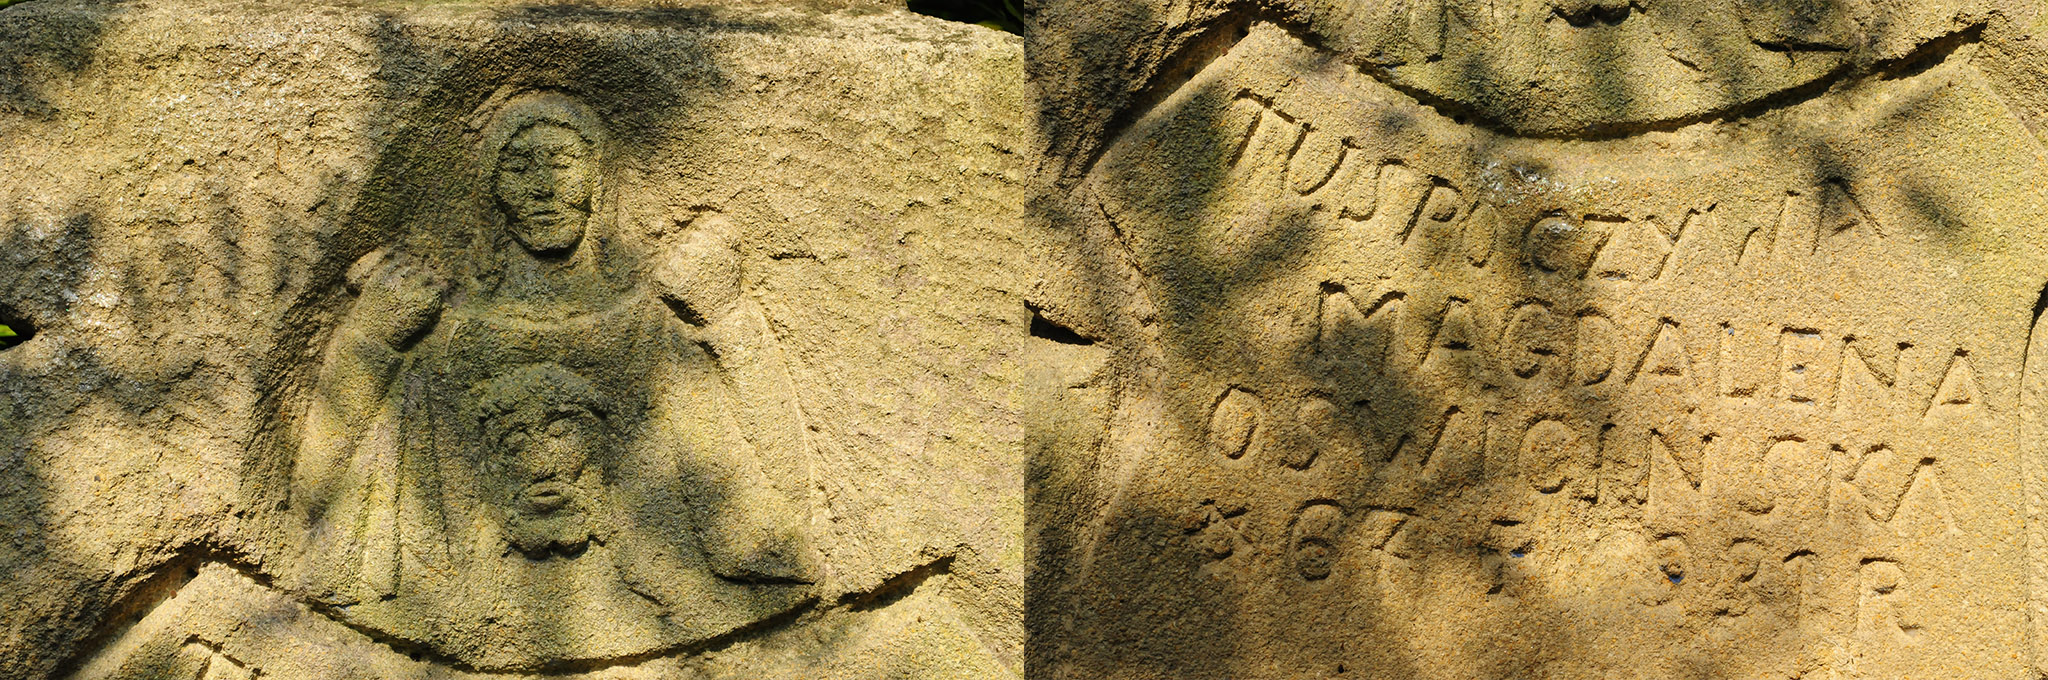 Detal i inskrypcja z nagrobka Magdaleny Oświcińskiej, cmentarz w Celejowie